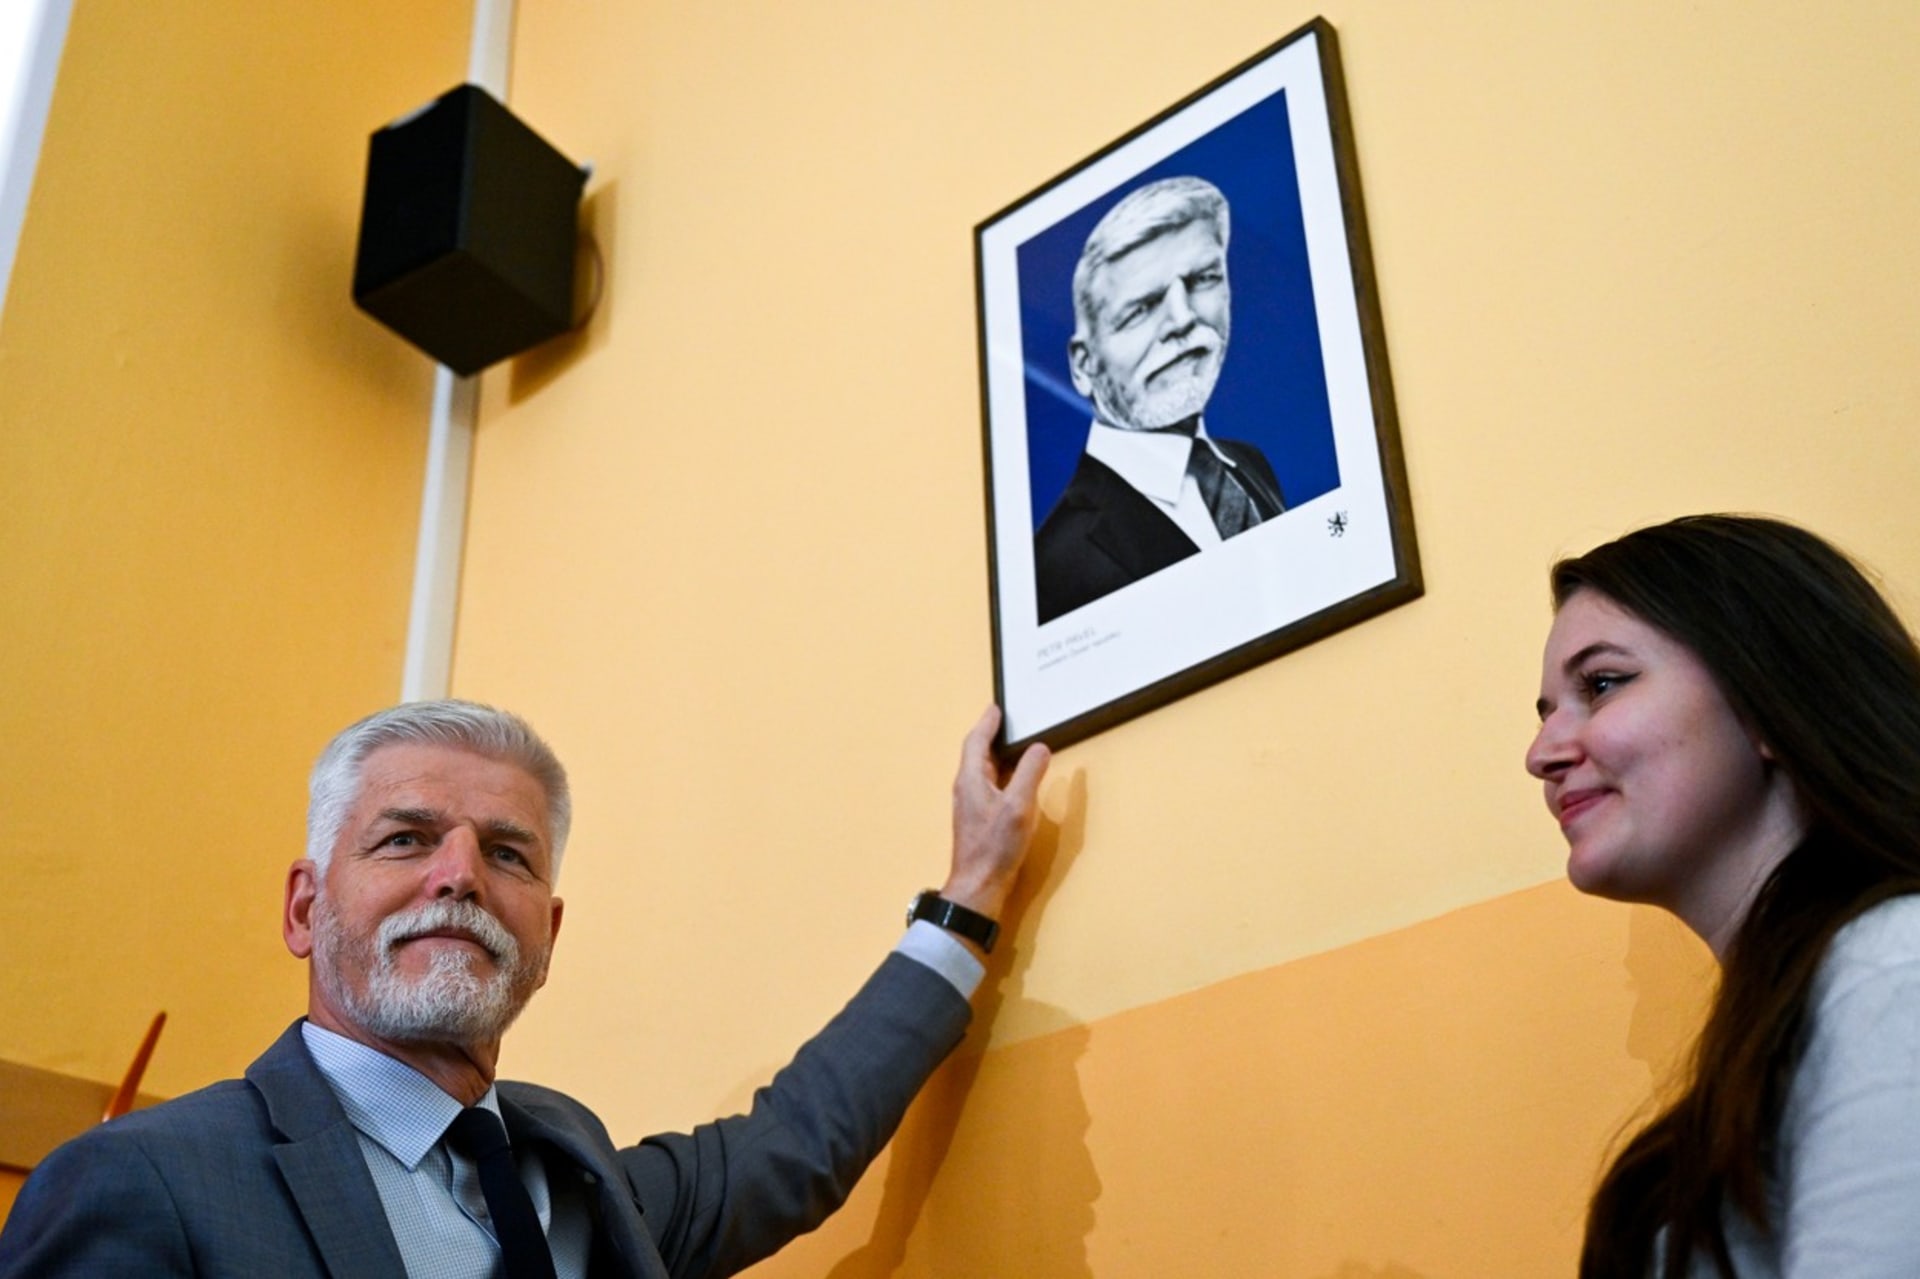 Prezident představuje svůj portrét